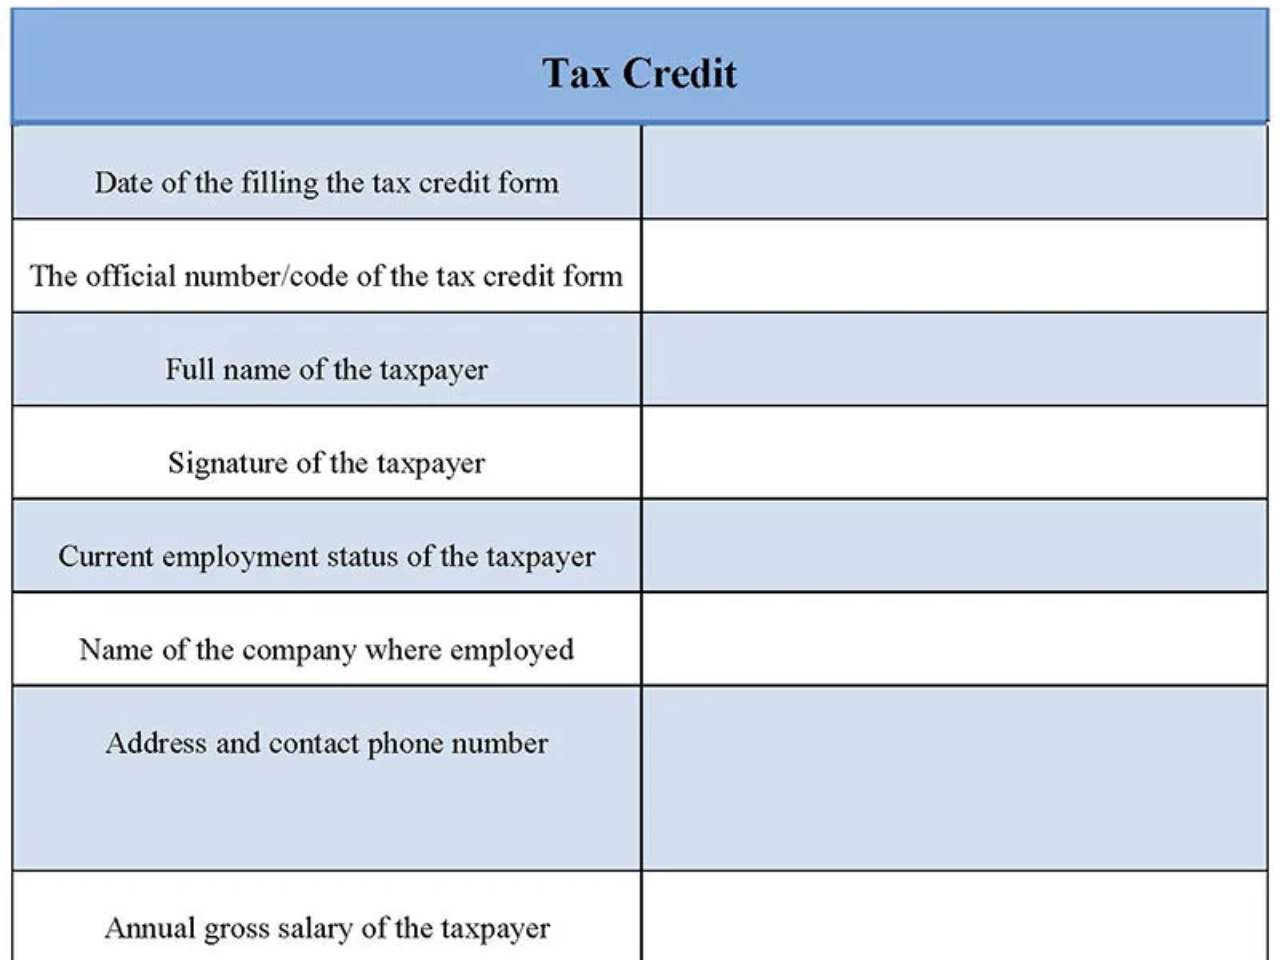 Tax Credit Form